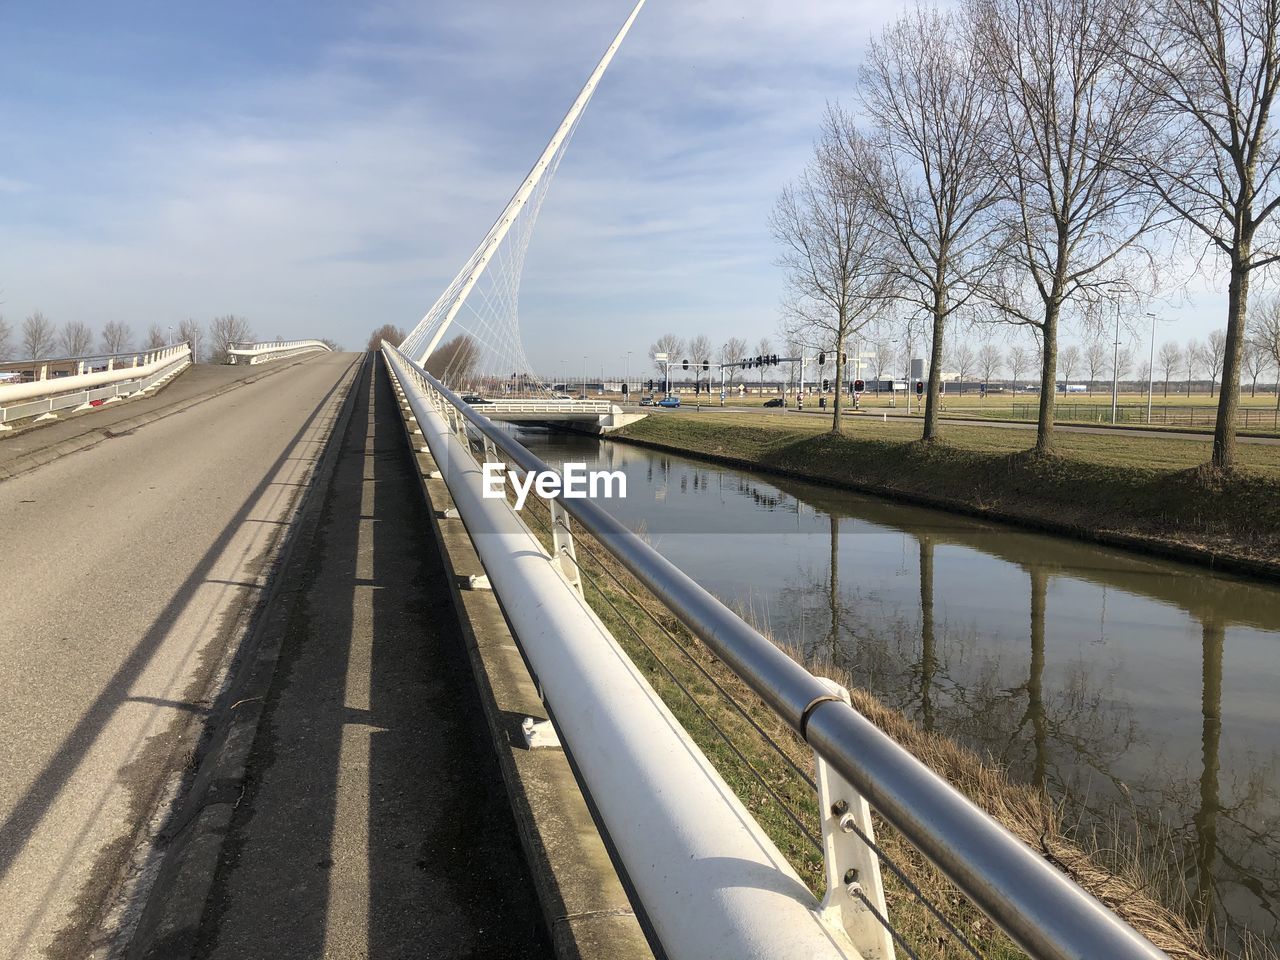 Bridge, crossing,water, elevated 